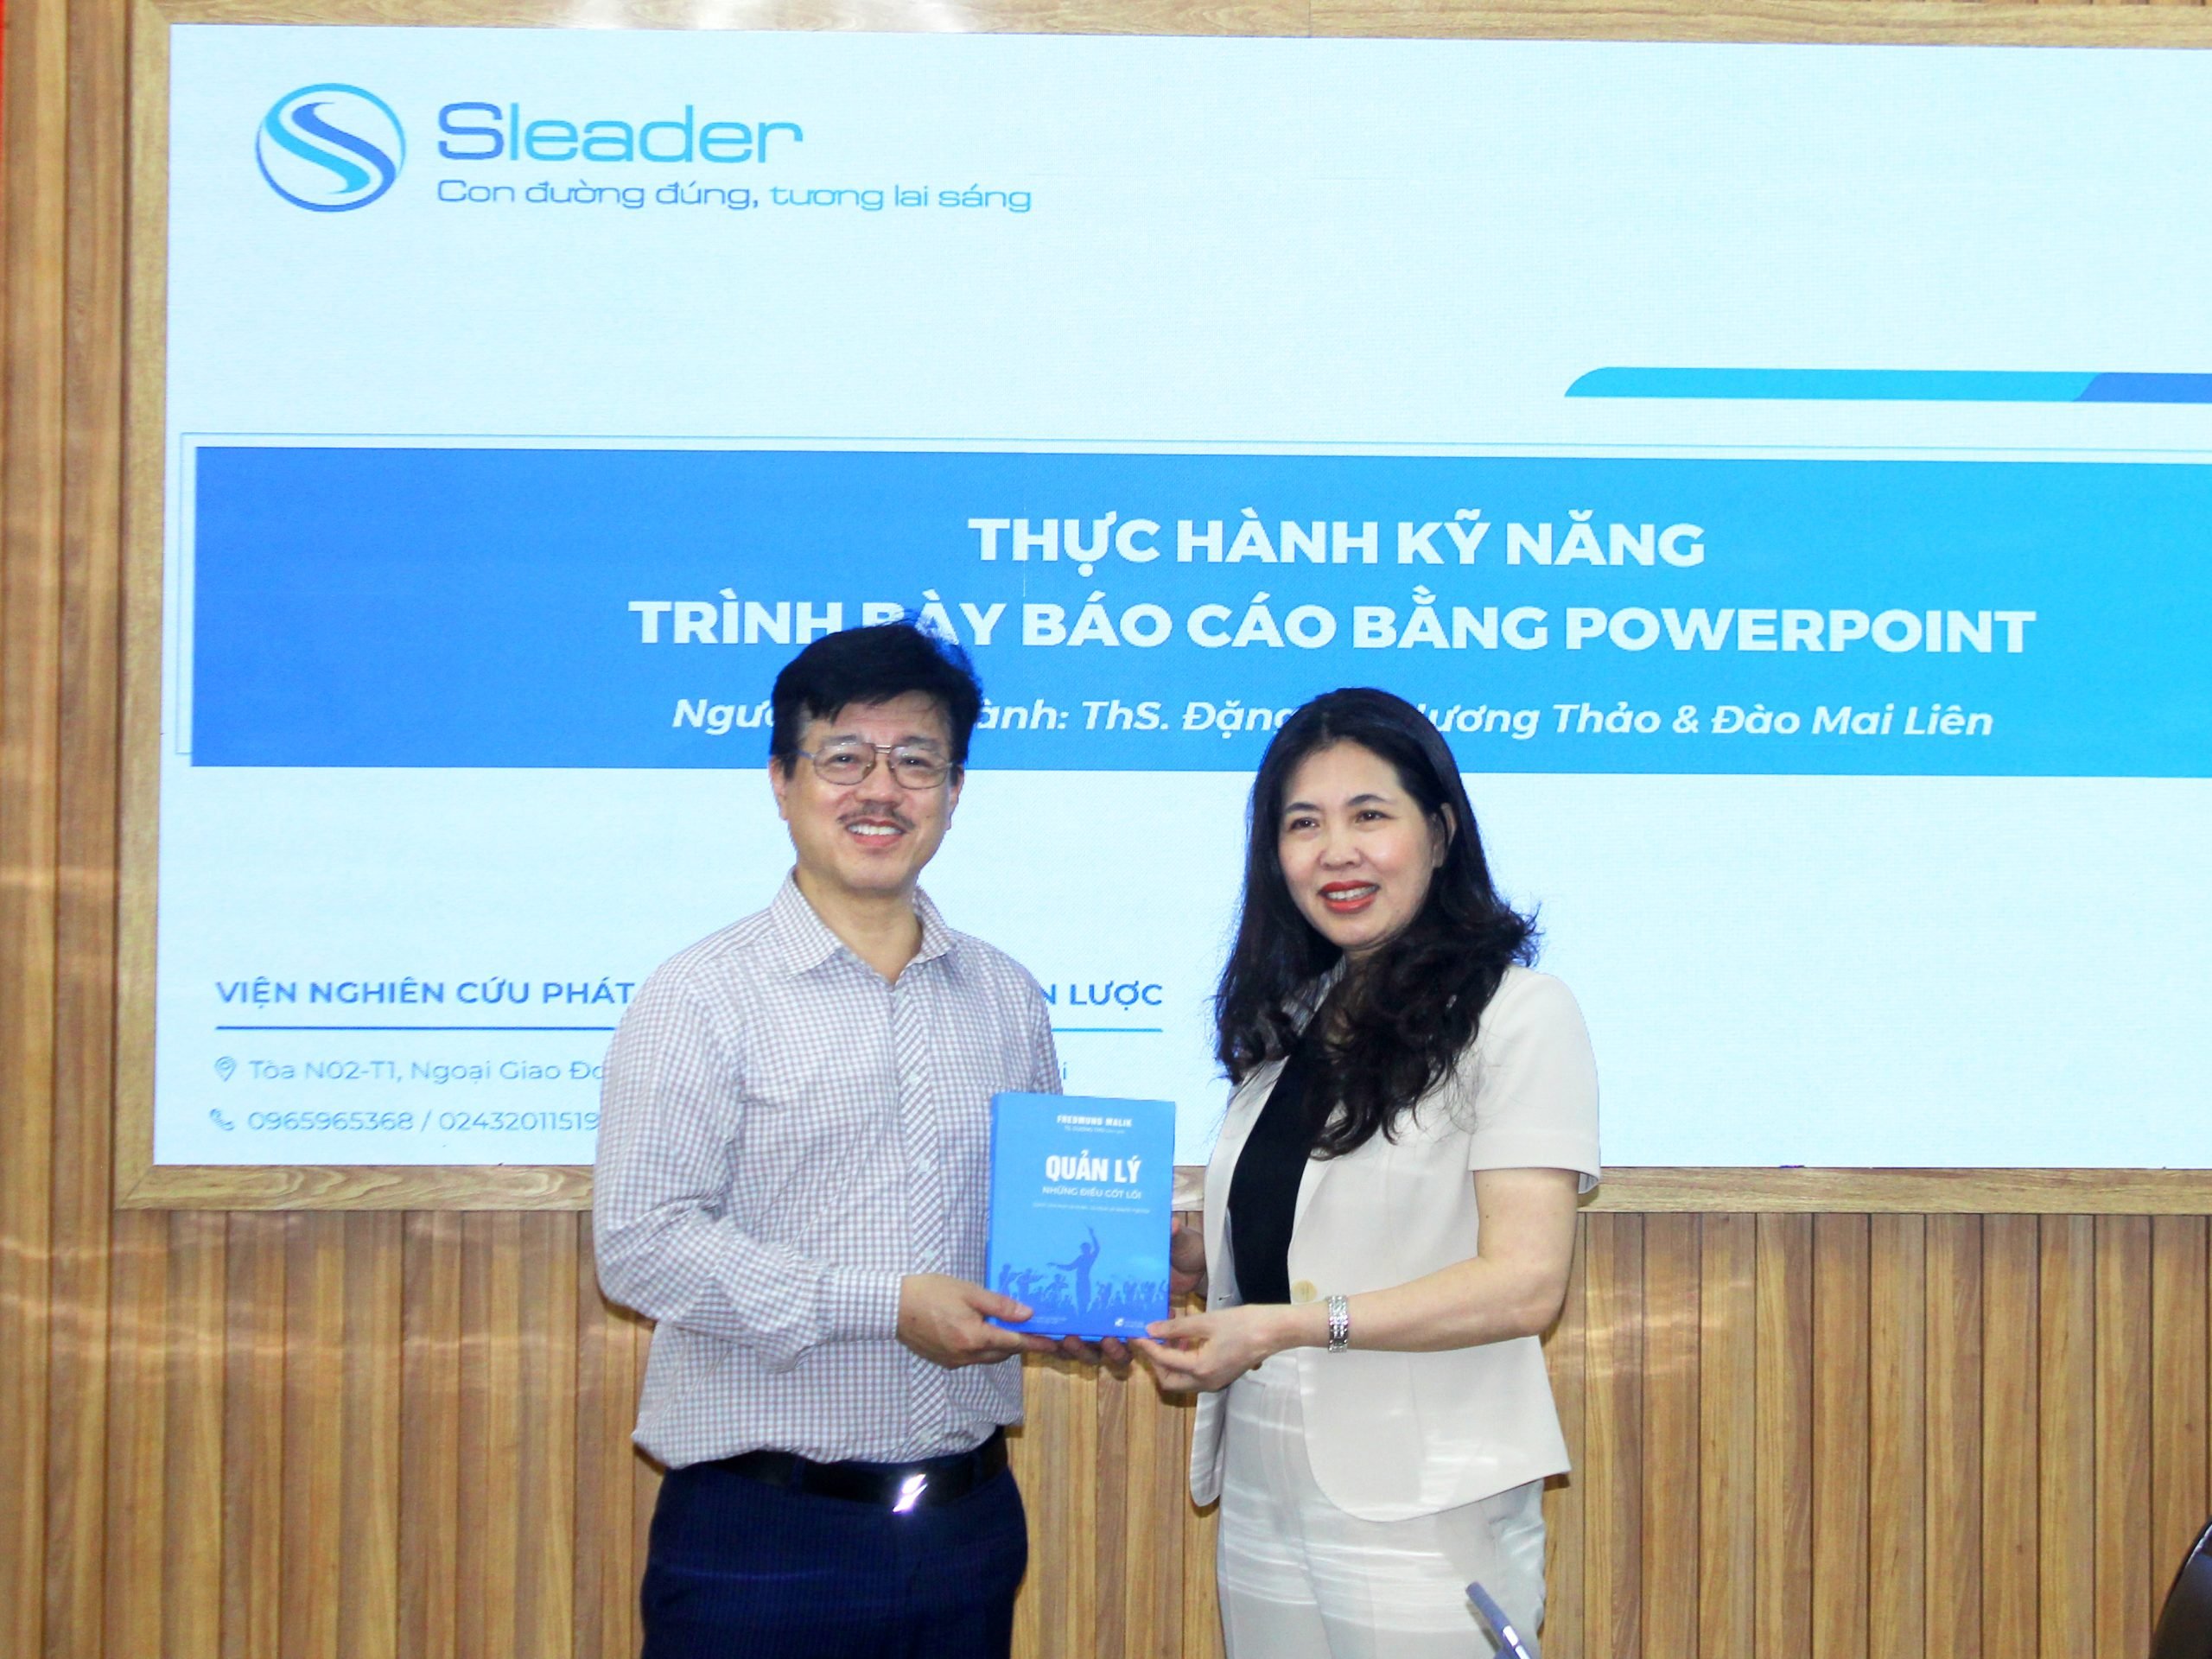 TS. Dương Thu, Viện trưởng Viện Lãnh đạo Chiến lược (SLEADER) đã tặng sách do Viện xuất bản cho ông Vũ Mạnh Cường, Giám đốc Trung tâm Truyền thông Giáo dục sức khỏe Trung ương